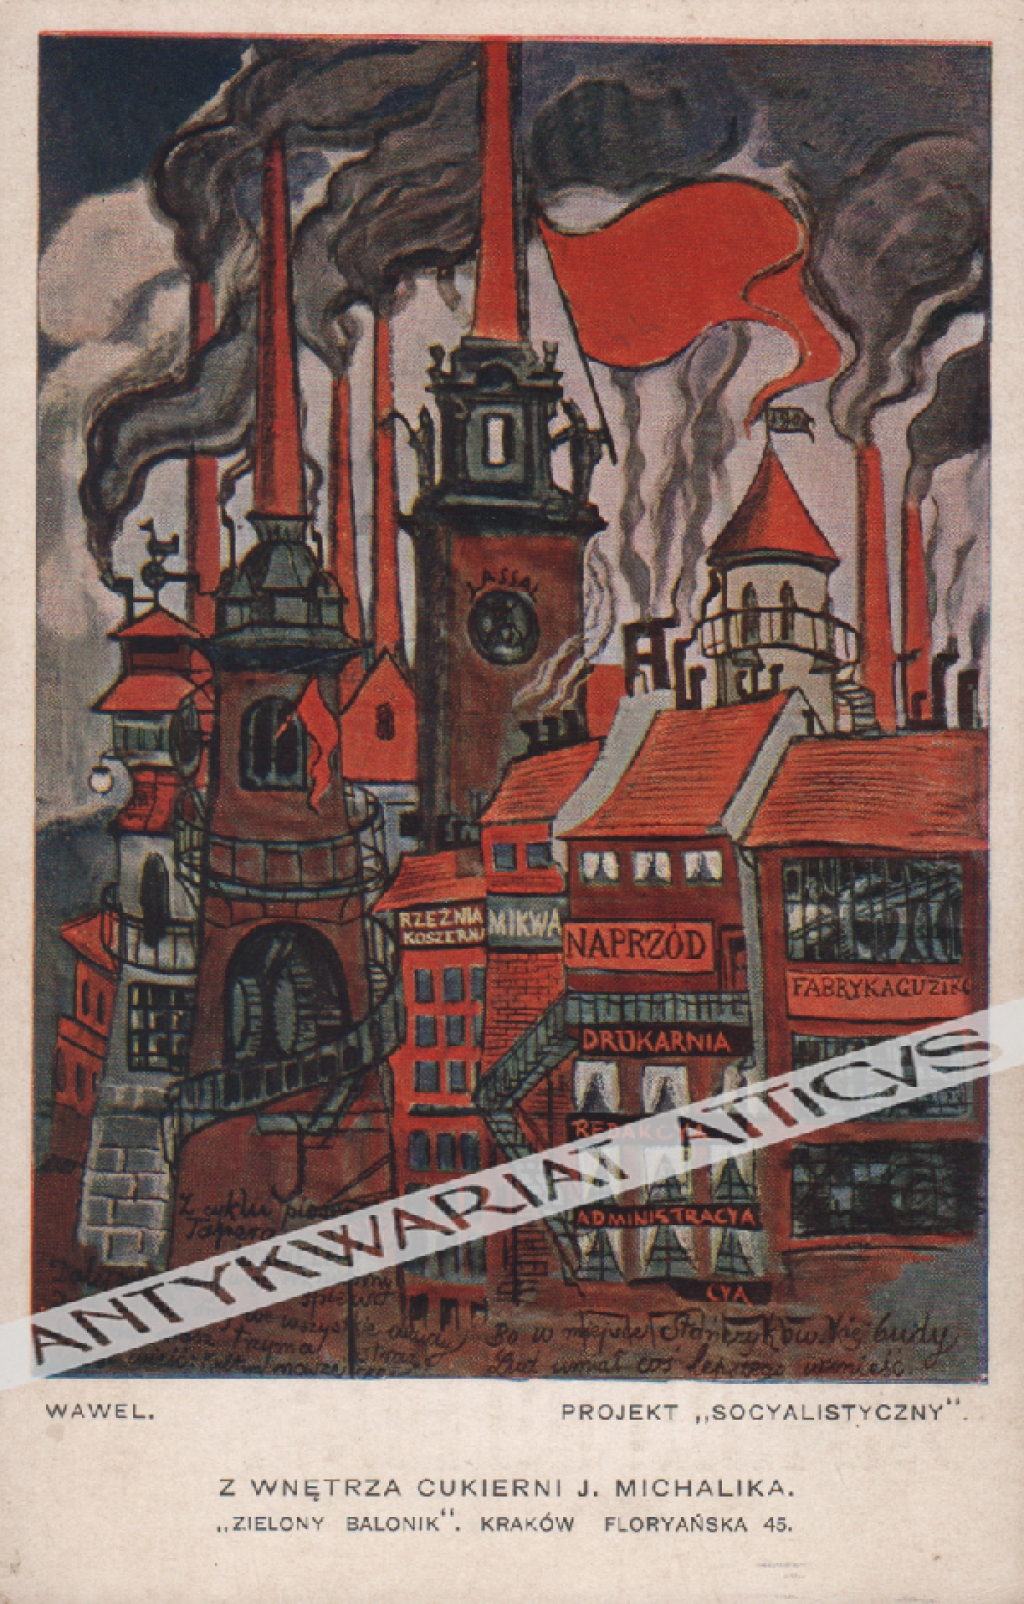 [pocztówka, lata 1930-te] Z wnętrza Cukierni J. Michalika. "Zielony Balonik". Kraków Floryańska 45 Wawel. Projekt "socyalistyczny"